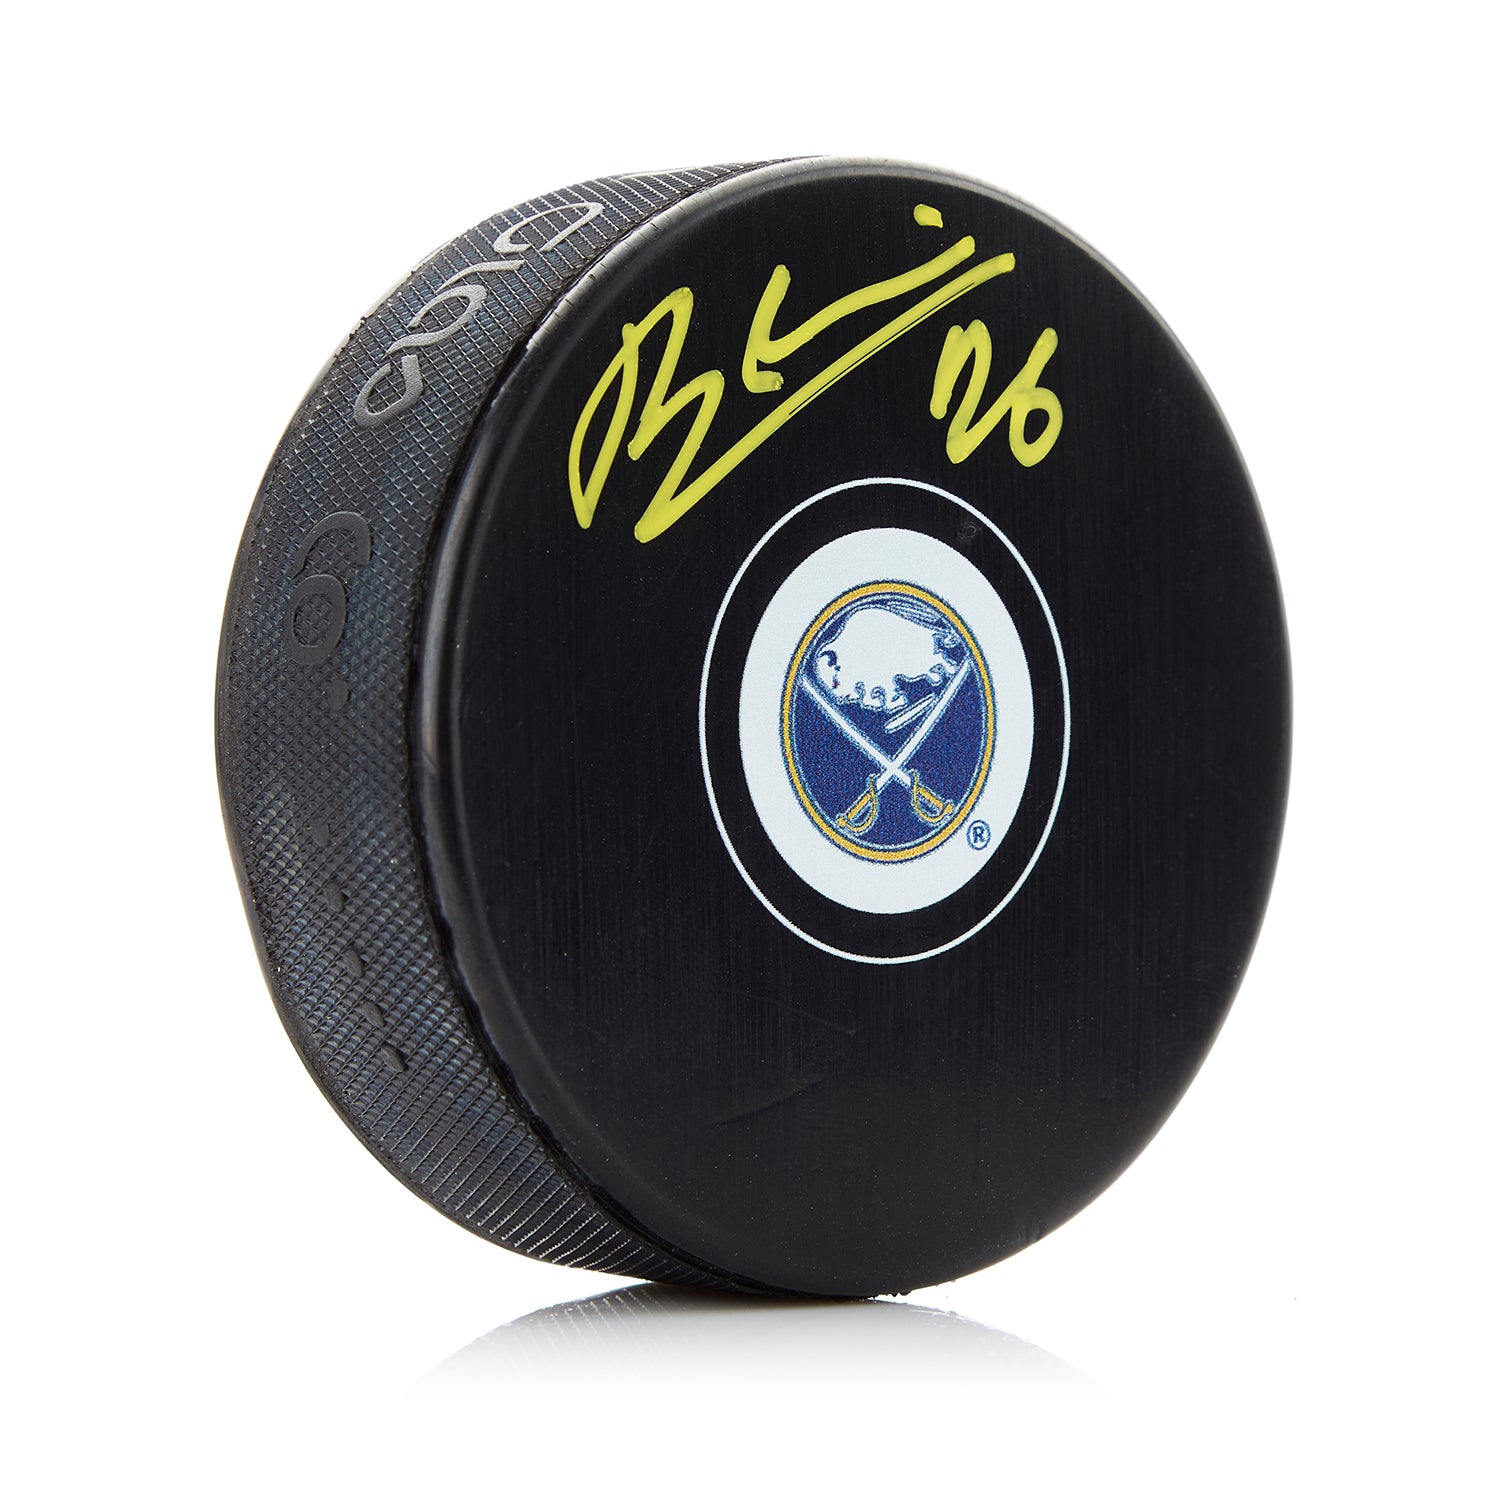 Rasmus Dahlin Autographed Buffalo Sabres Hockey Puck